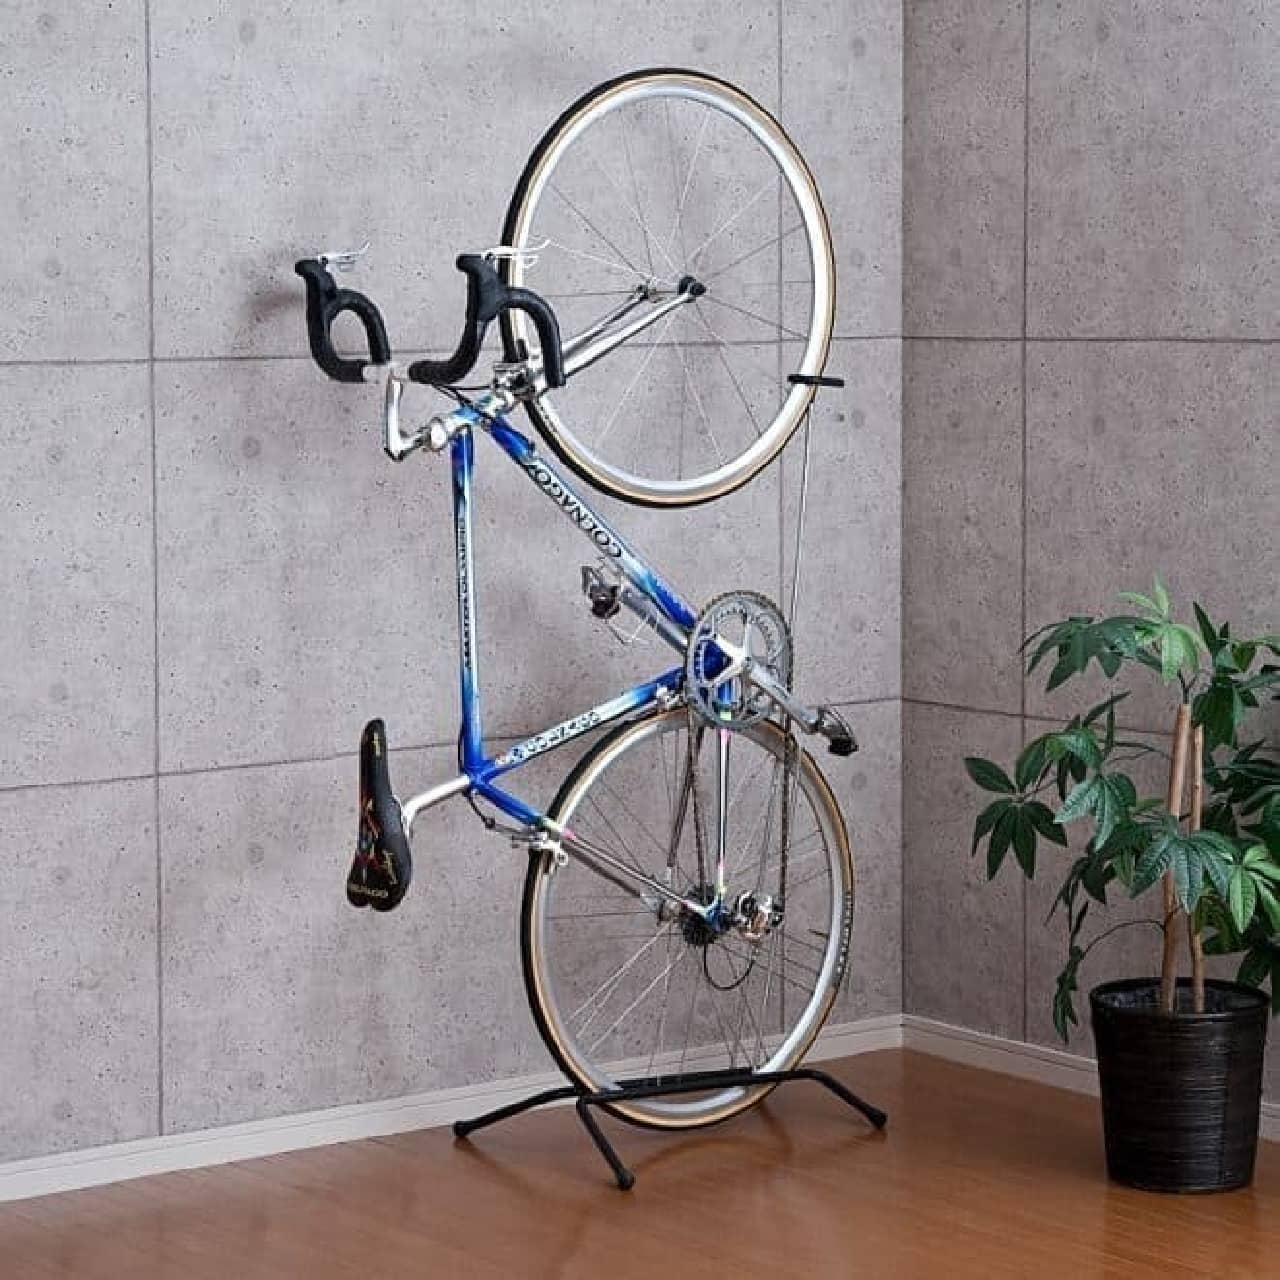 自転車を室内に立てて収納―スペースを有効活用できるスタンド「800BYST4」 [えんウチ]